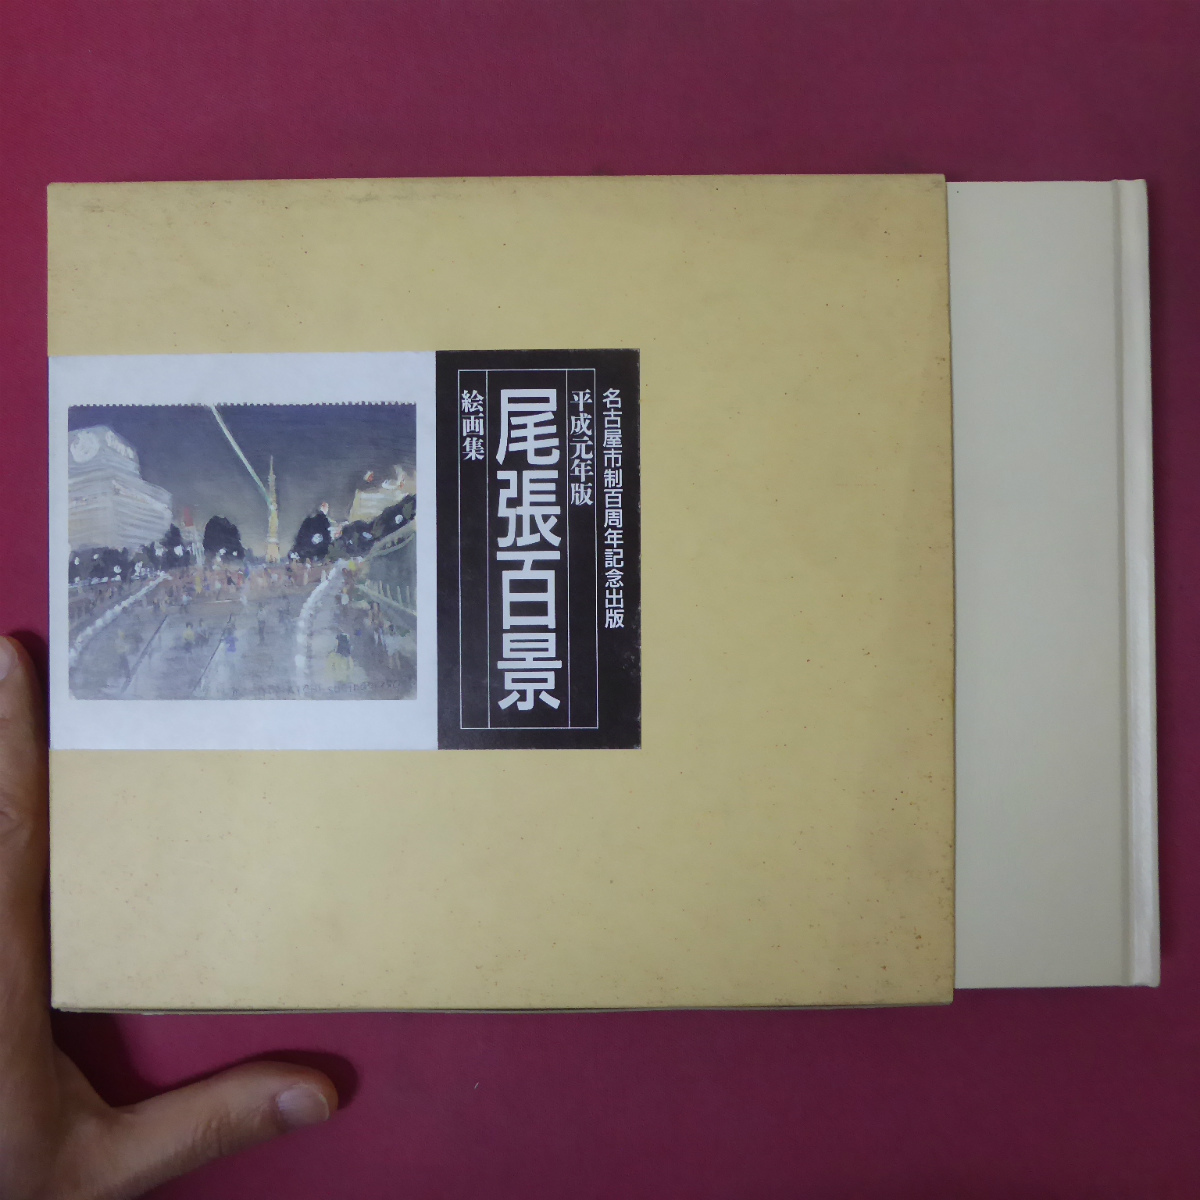 2 कैटलॉग [1989 संस्करण ओवरी 100 दृश्य पेंटिंग संग्रह/1989 विश्व डिजाइन एक्सपो नागोया कैसल स्थल], चित्रकारी, कला पुस्तक, संग्रह, सूची